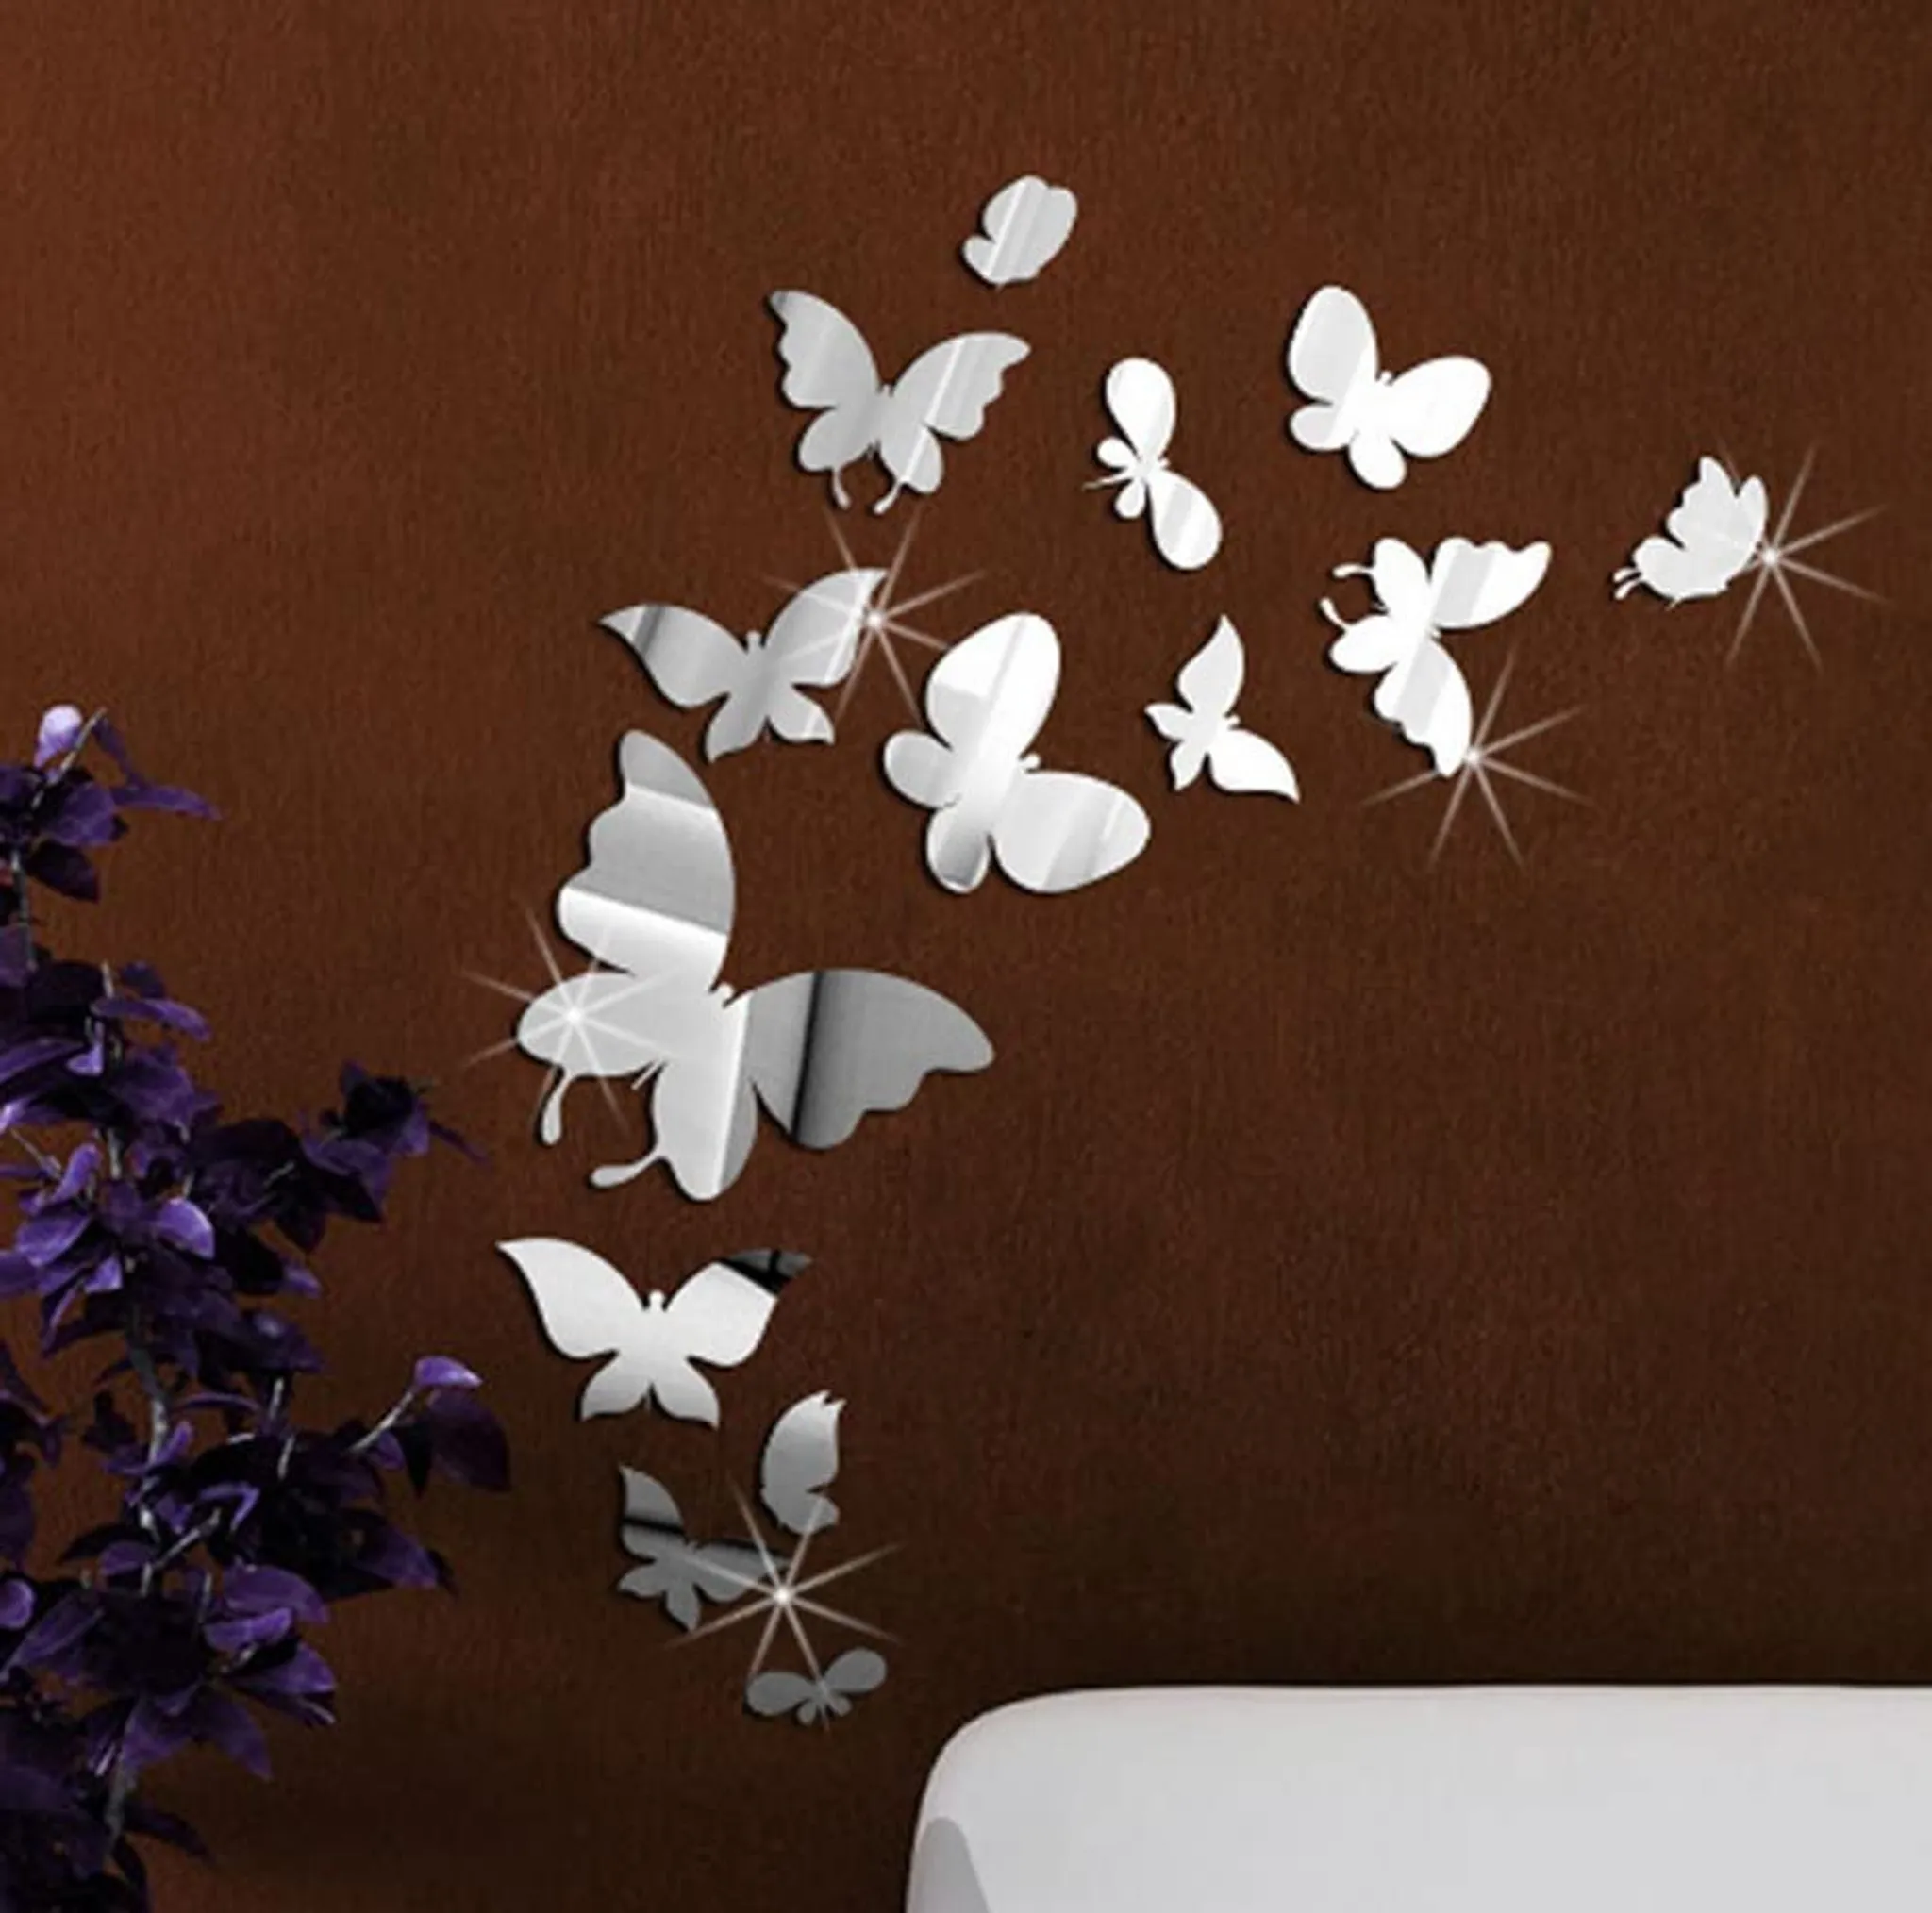 3D-Spiegel Schmetterling Wandaufkleber Abnehmbare DIY Home Art Mural Decor~Neu 